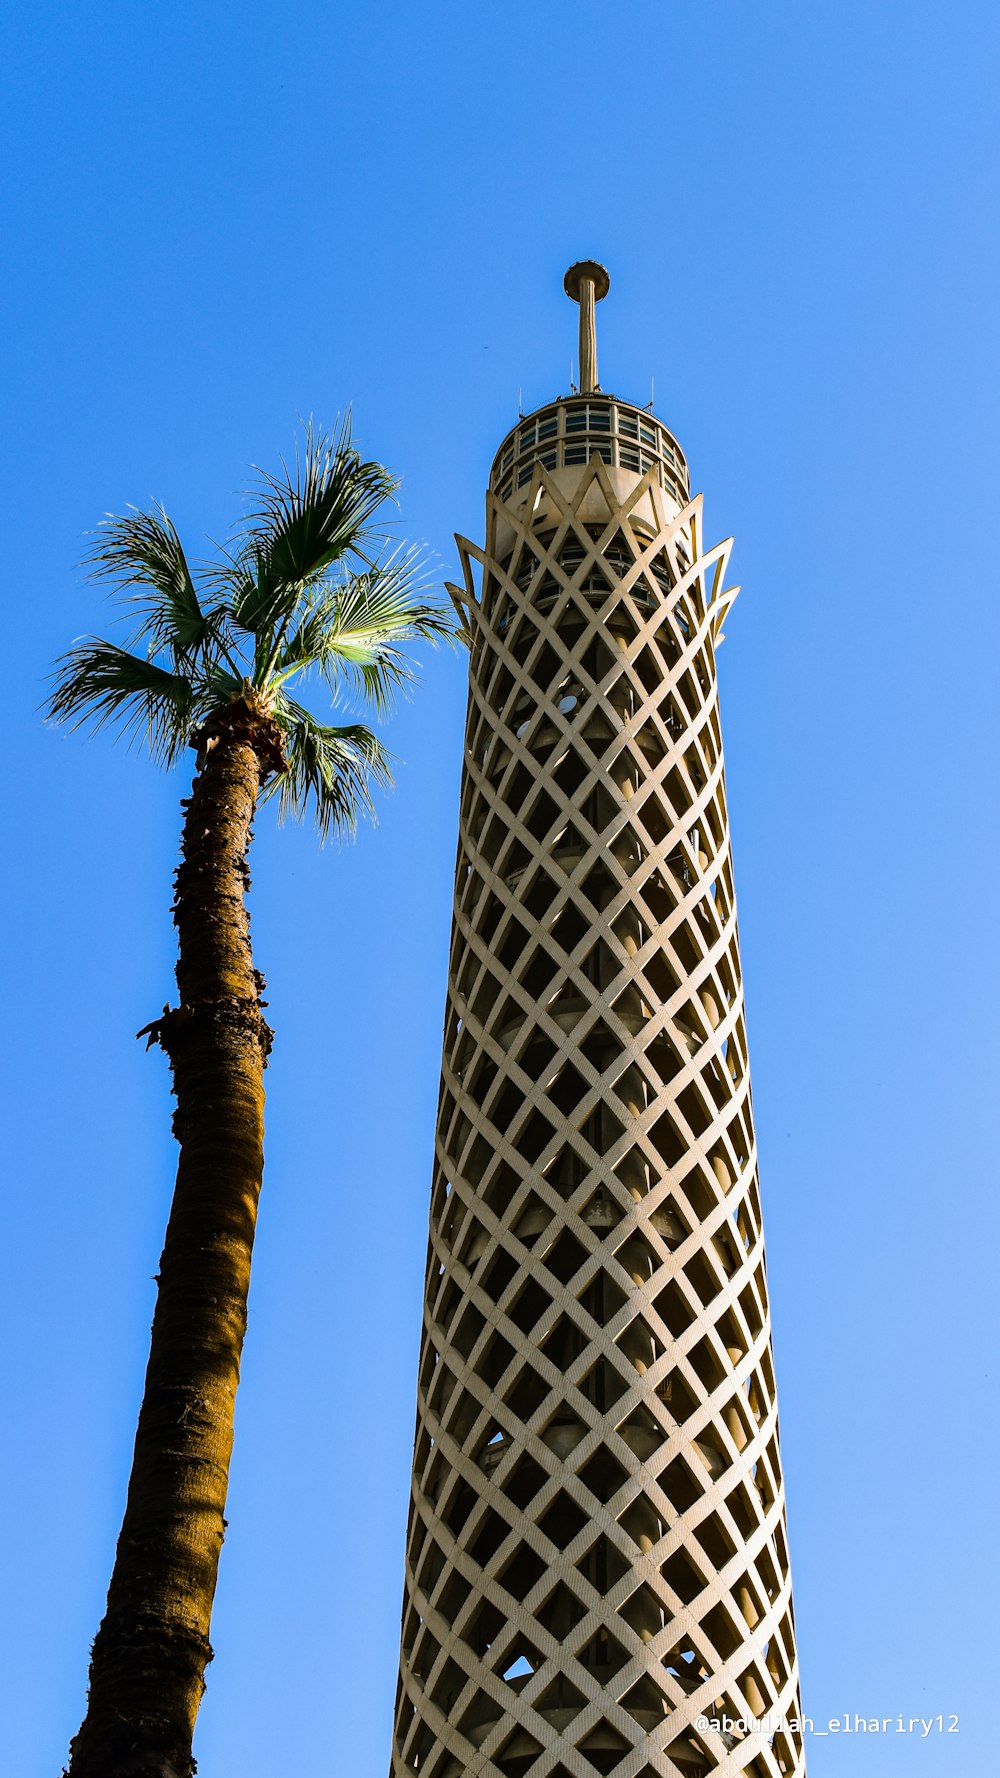 palmeira verde perto da torre branca e preta